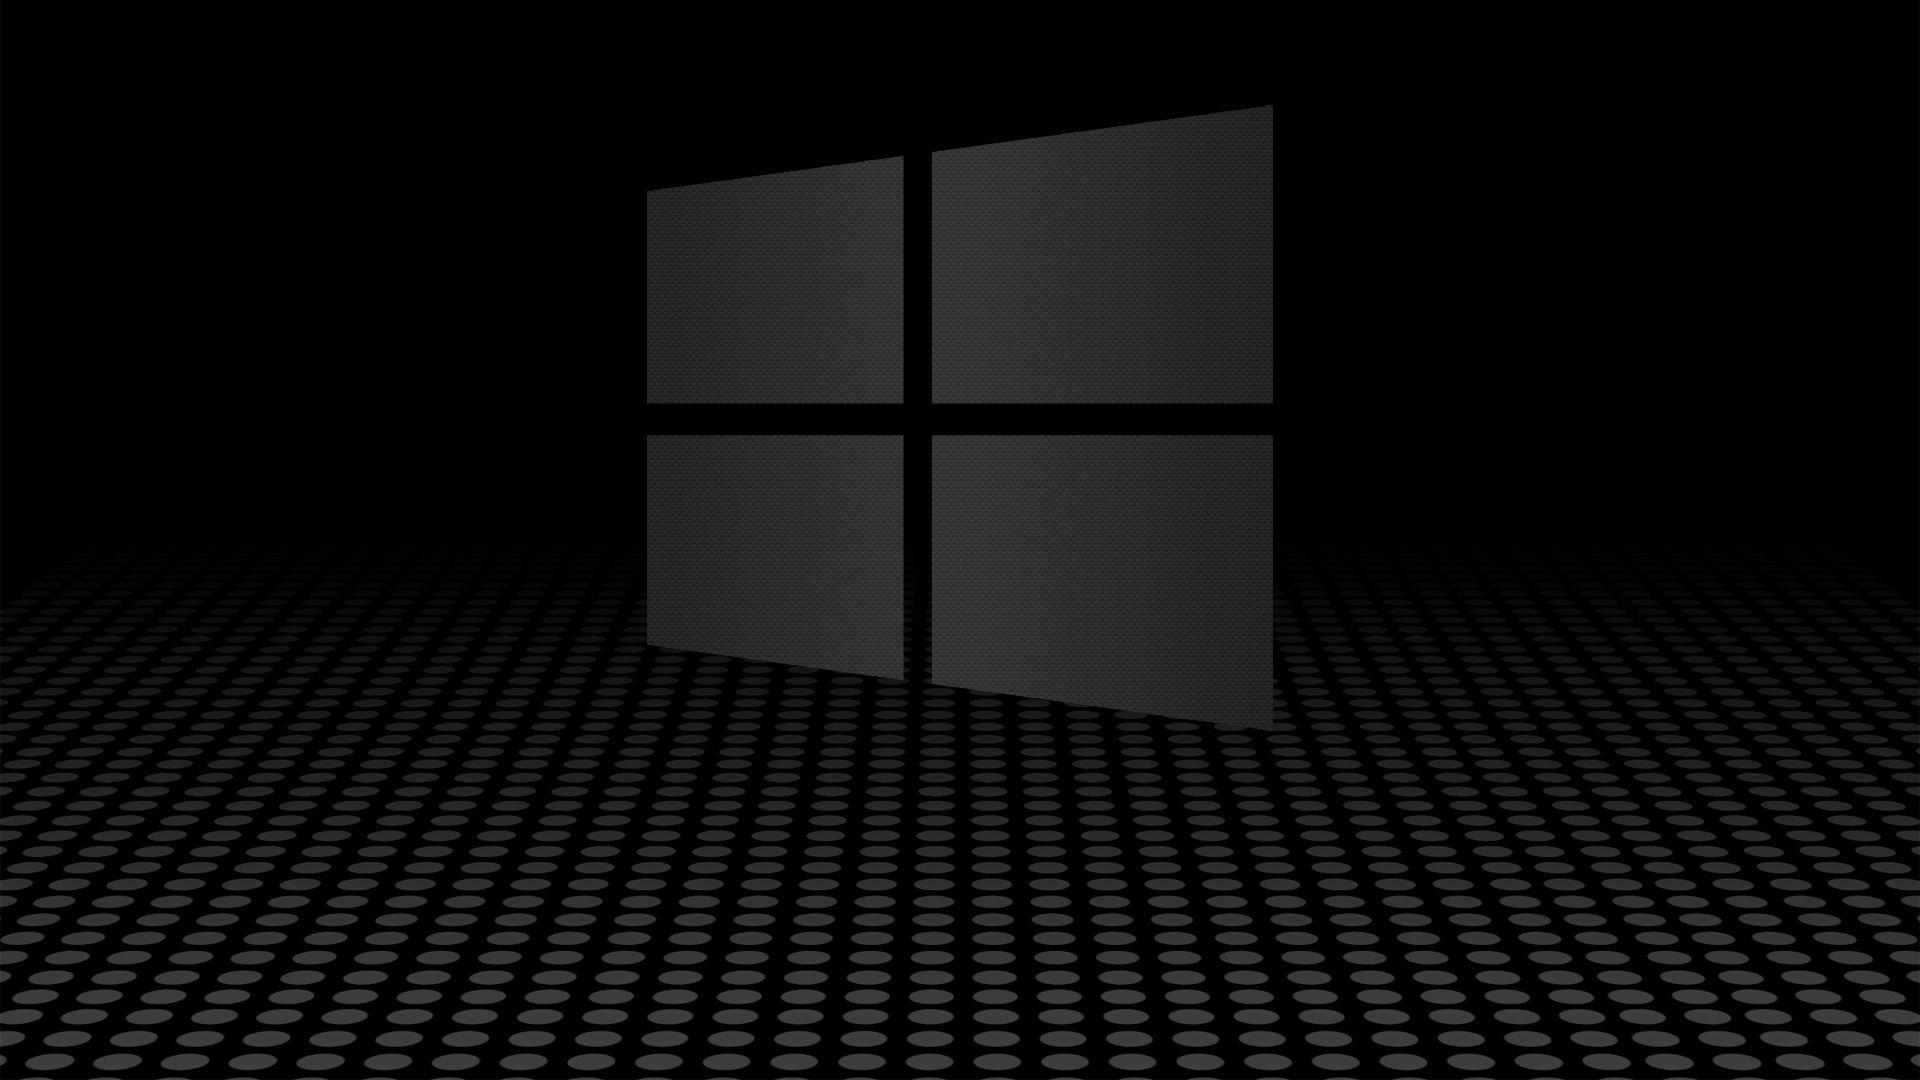 Windows 10 black theme wallpaper - strategyhon